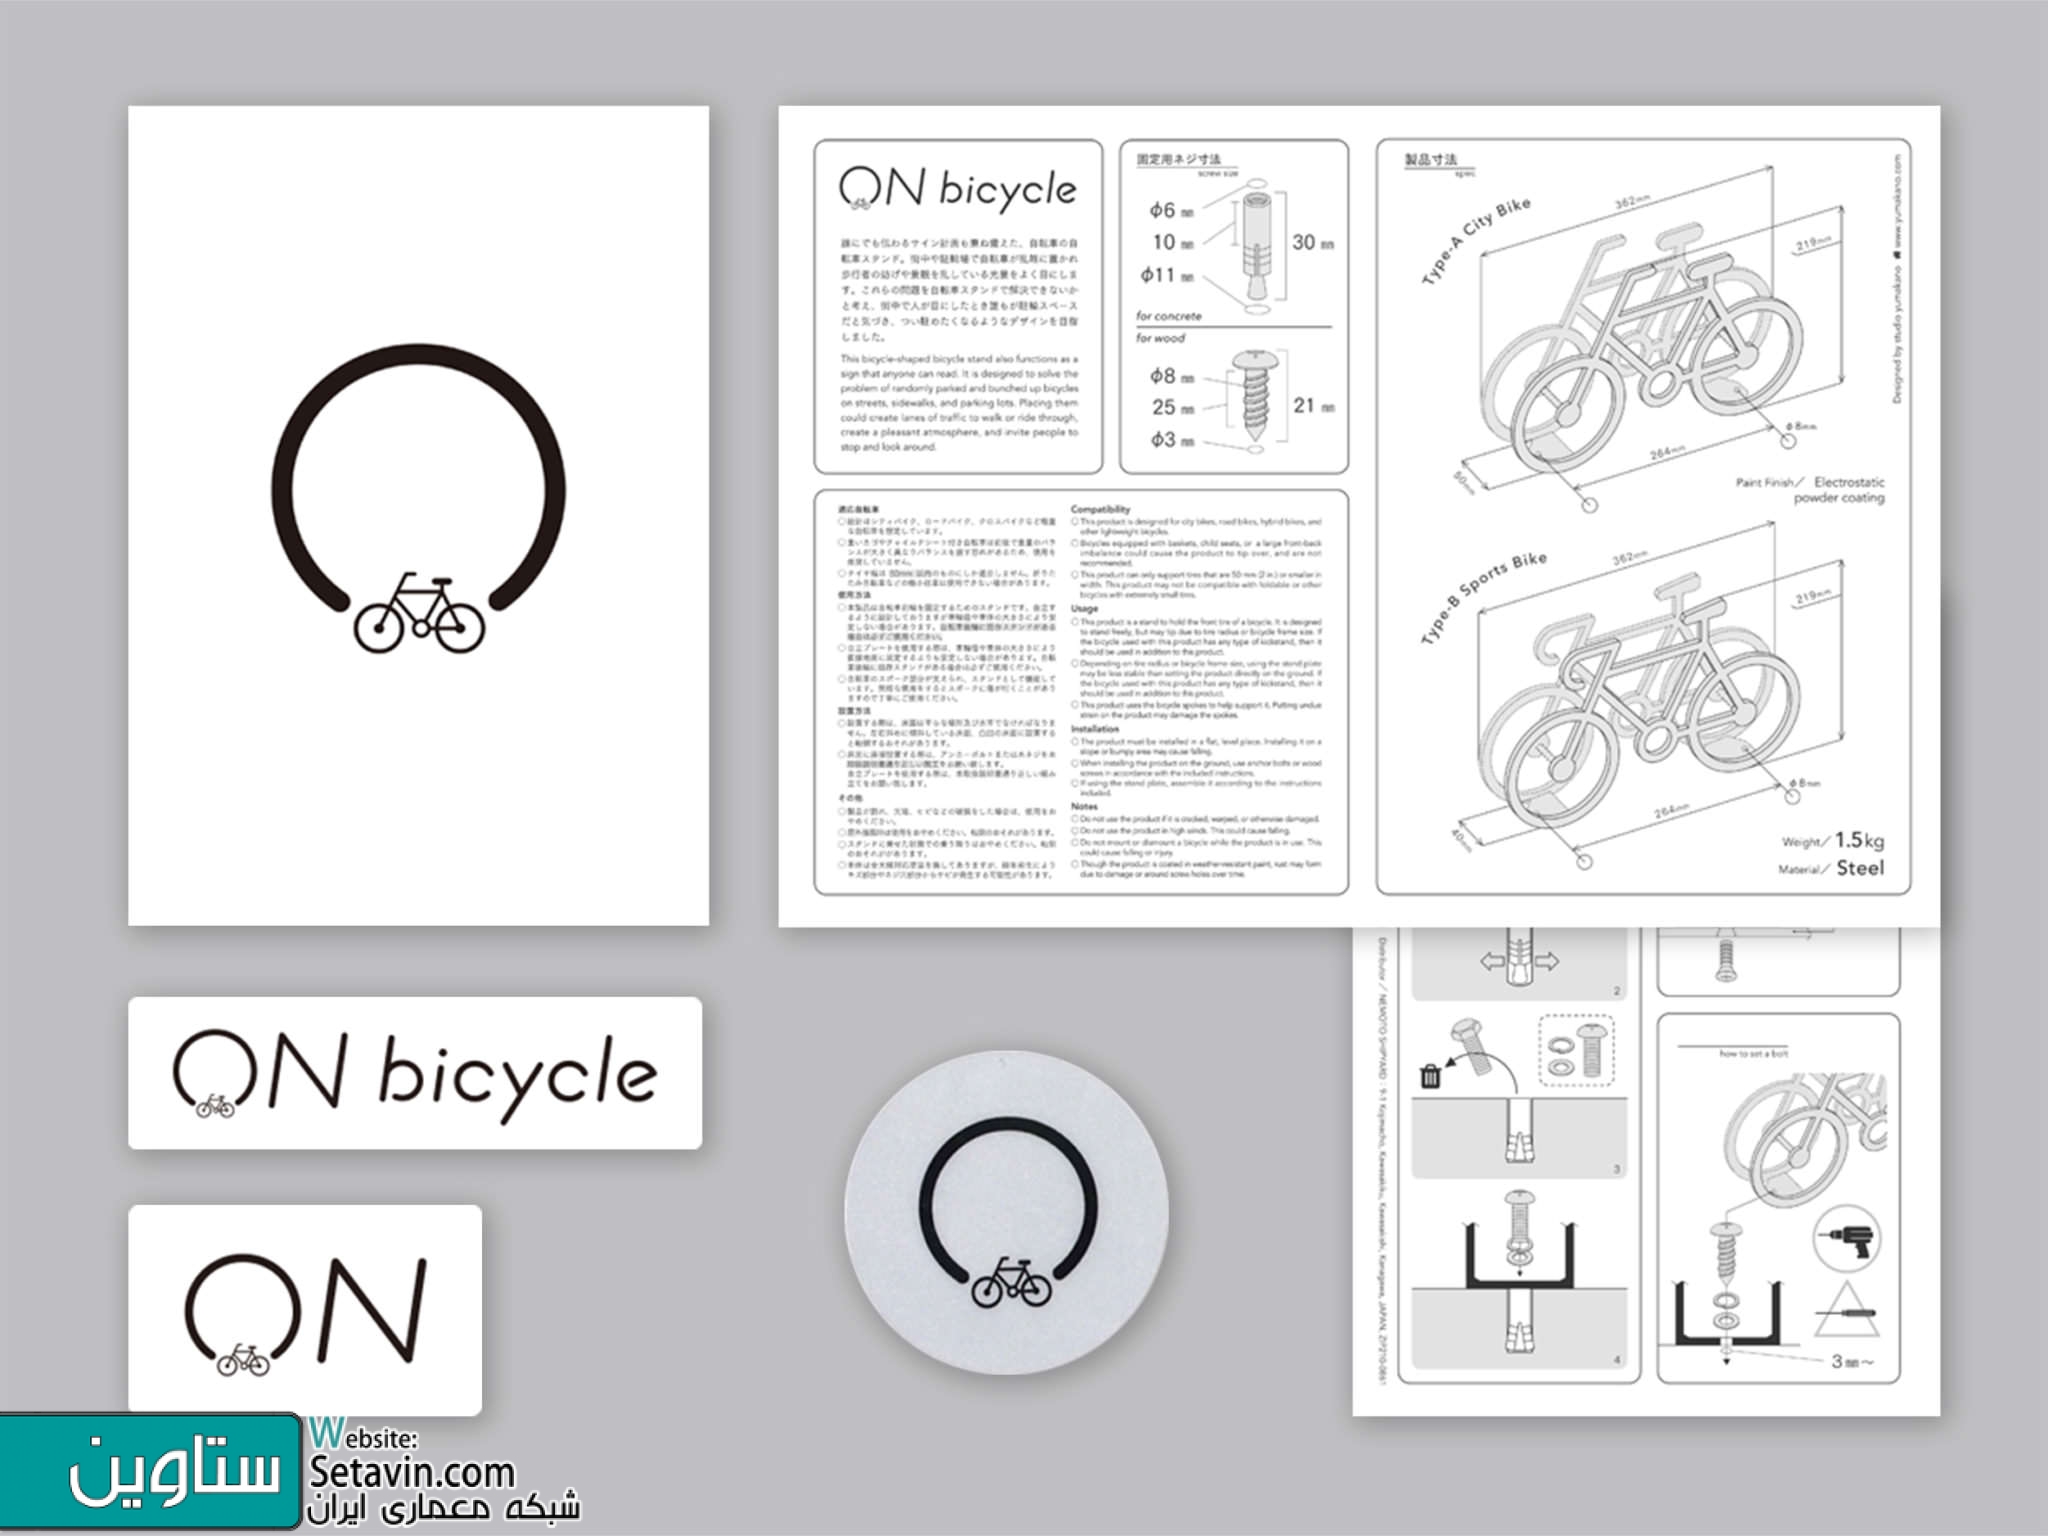 ایده مبتکرانه طراح ژاپنی برای ایستگاه دوچرخه